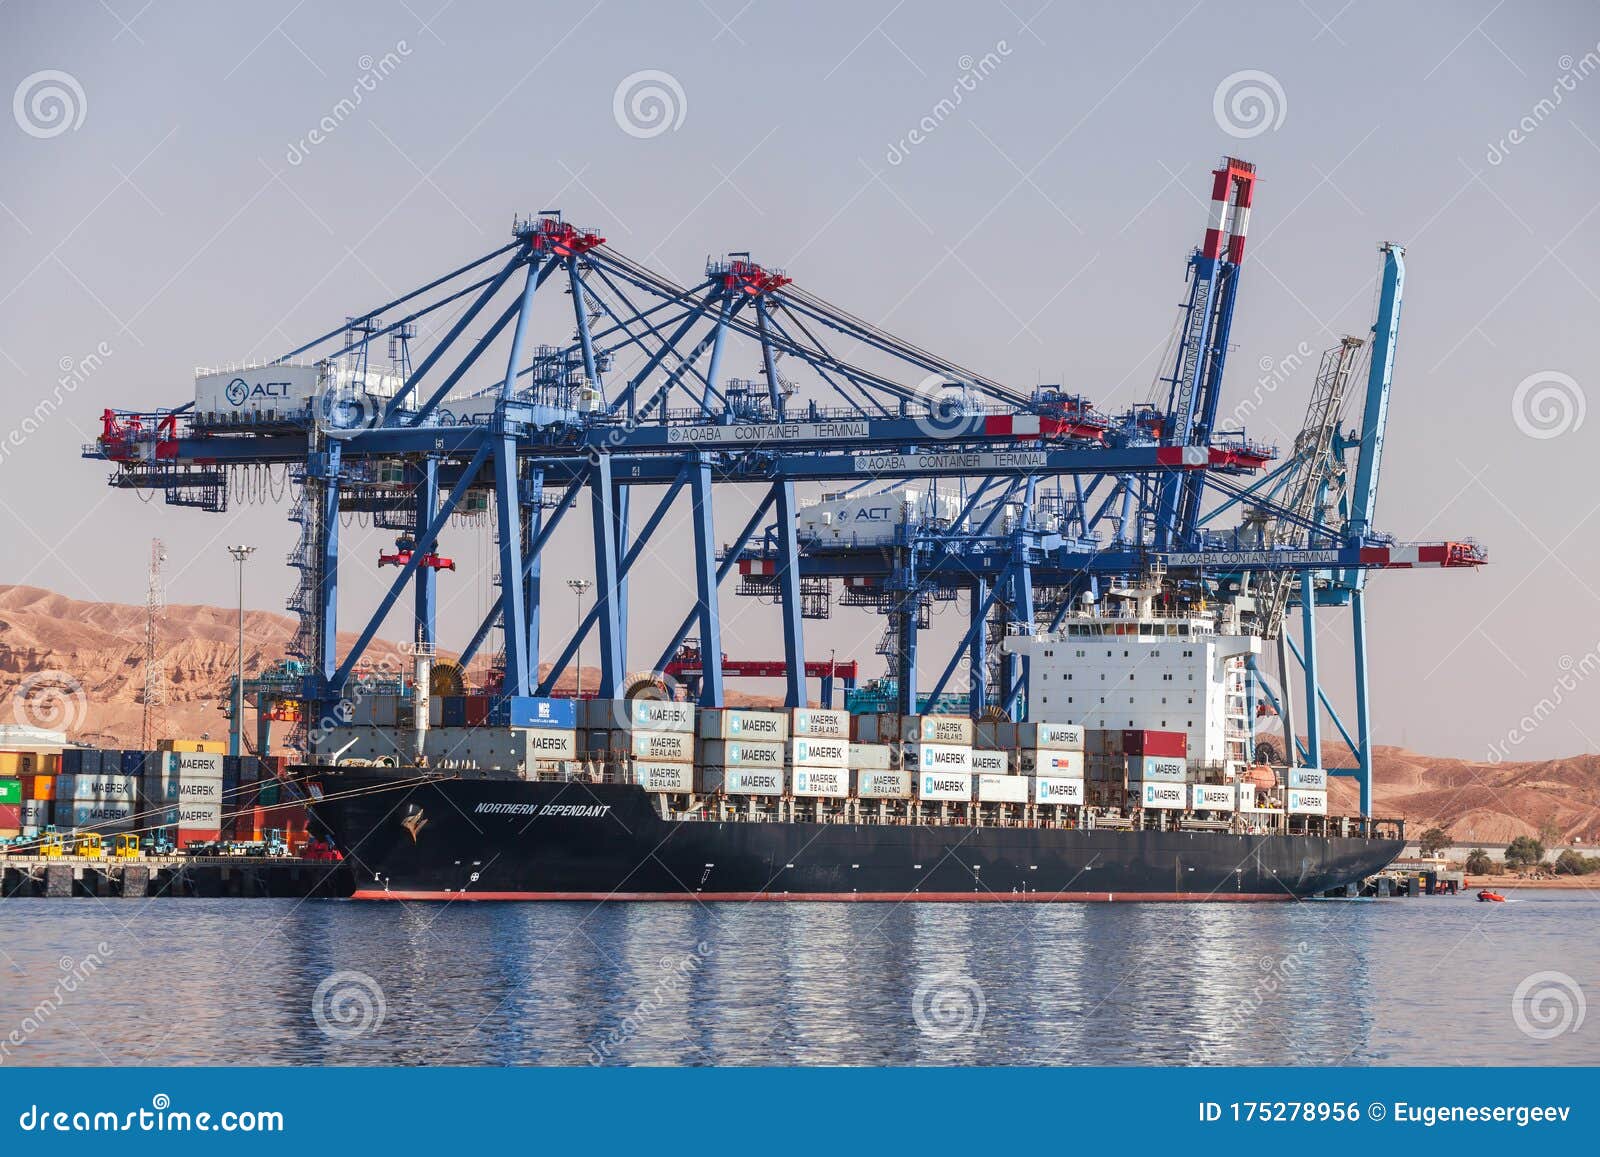 Sí misma explosión parrilla Gantry Cranes Unload Container Ship in Aqaba, Jordan Editorial Photo -  Image of cranes, import: 175278956